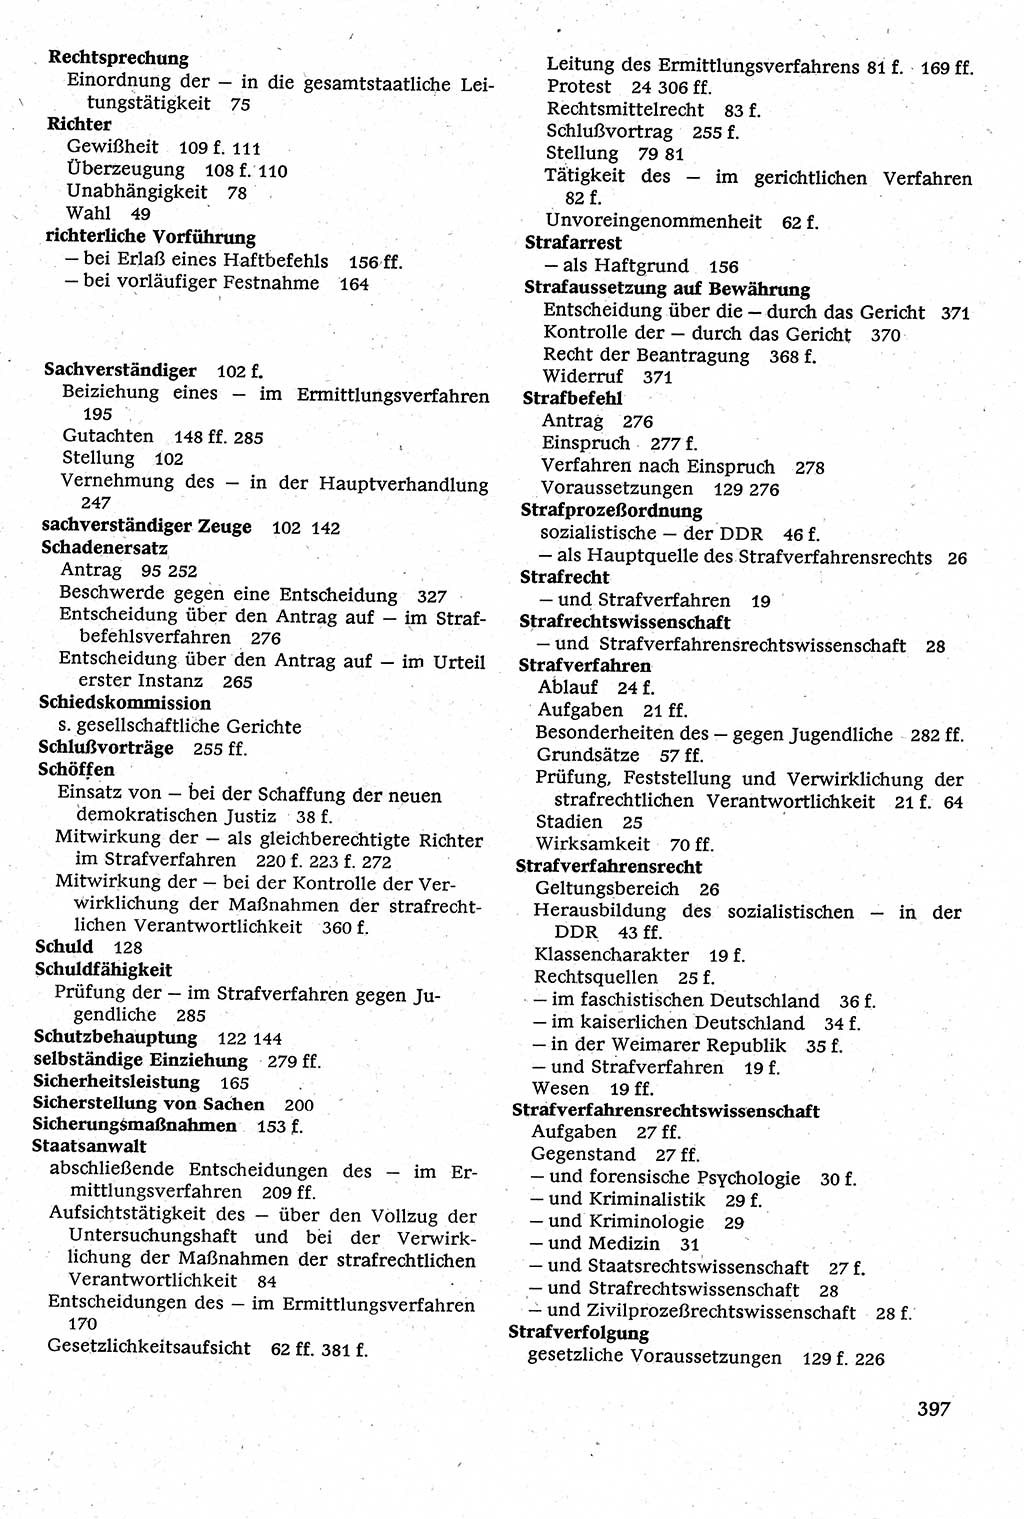 Strafverfahrensrecht [Deutsche Demokratische Republik (DDR)], Lehrbuch 1982, Seite 397 (Strafverf.-R. DDR Lb. 1982, S. 397)